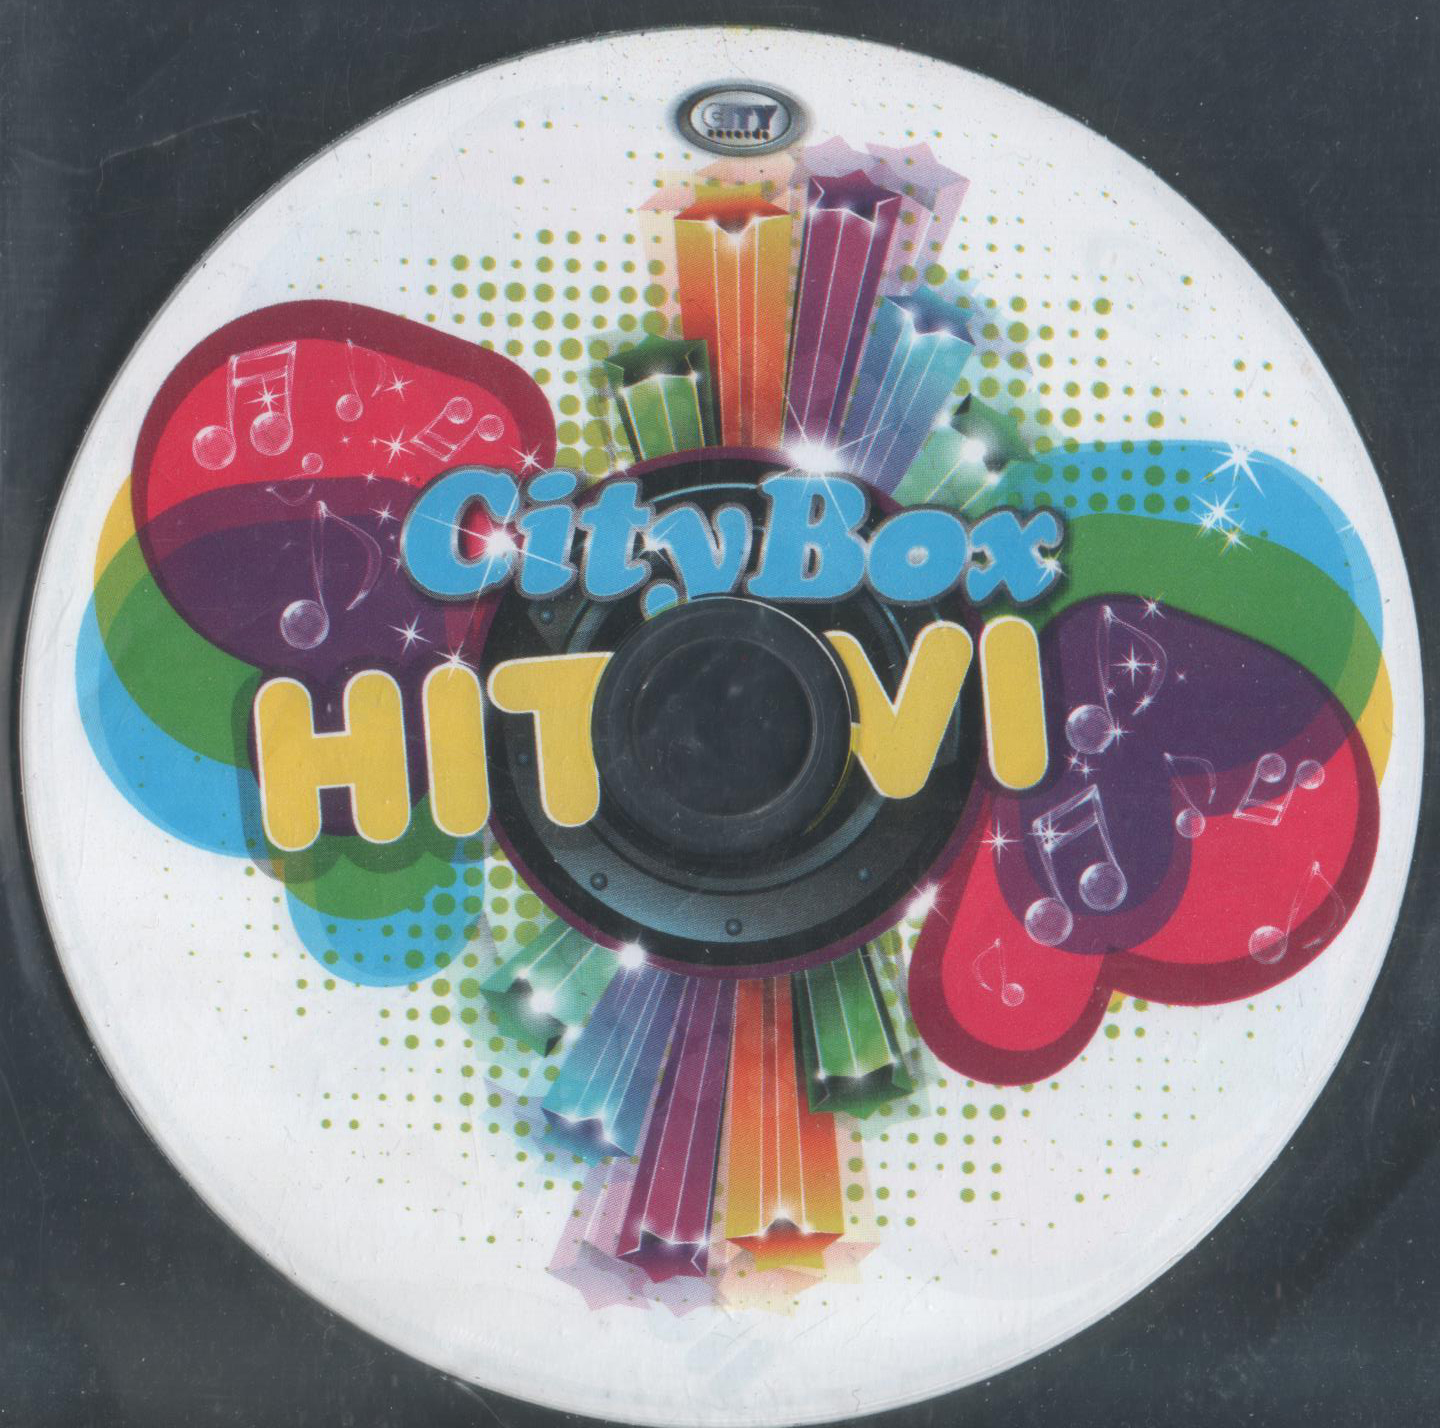 CBHitovi 1 CD